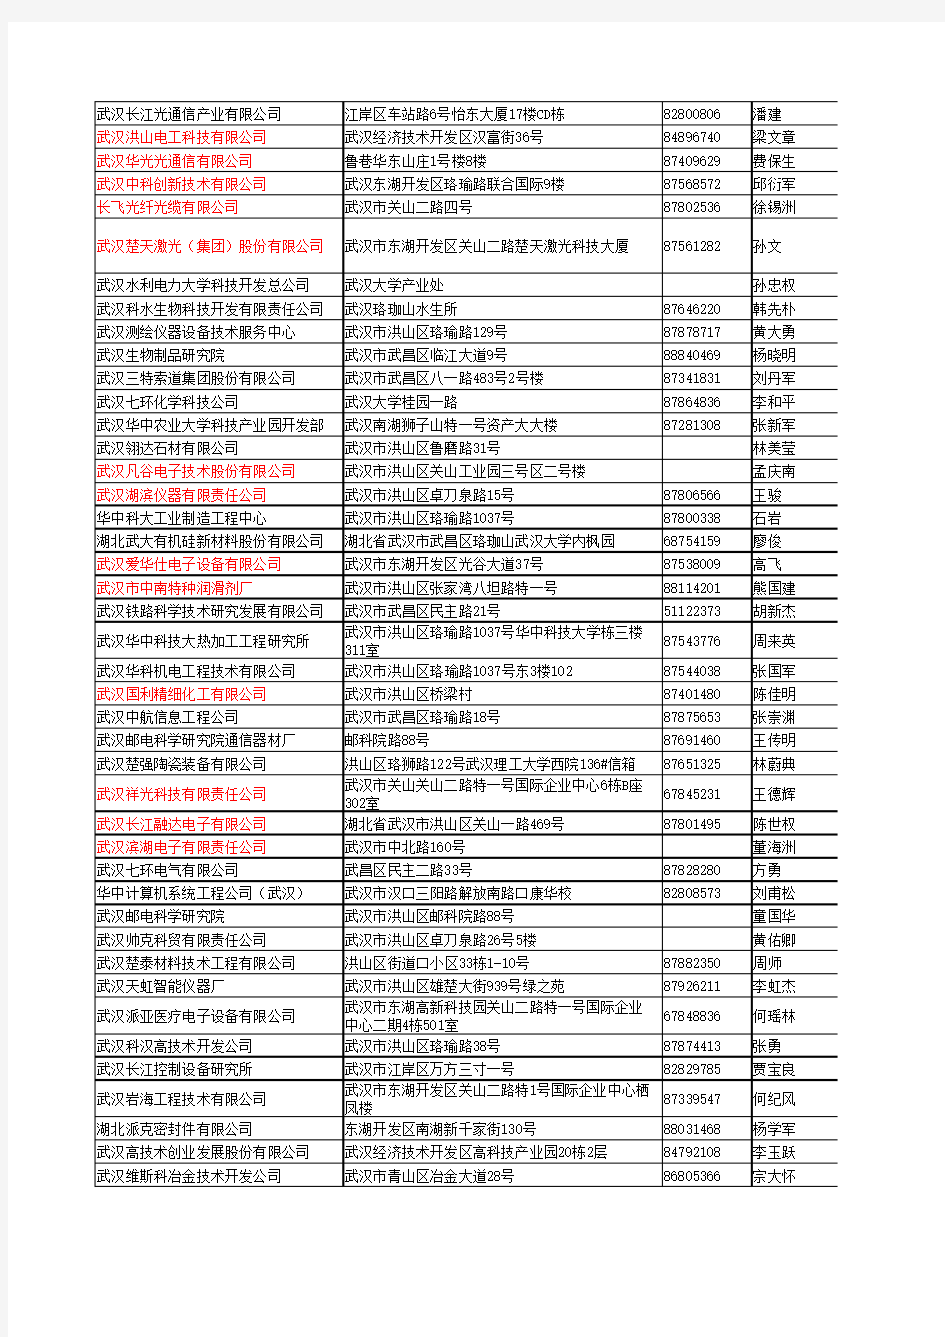 武汉东湖新技术开发区企业完整名录3450家